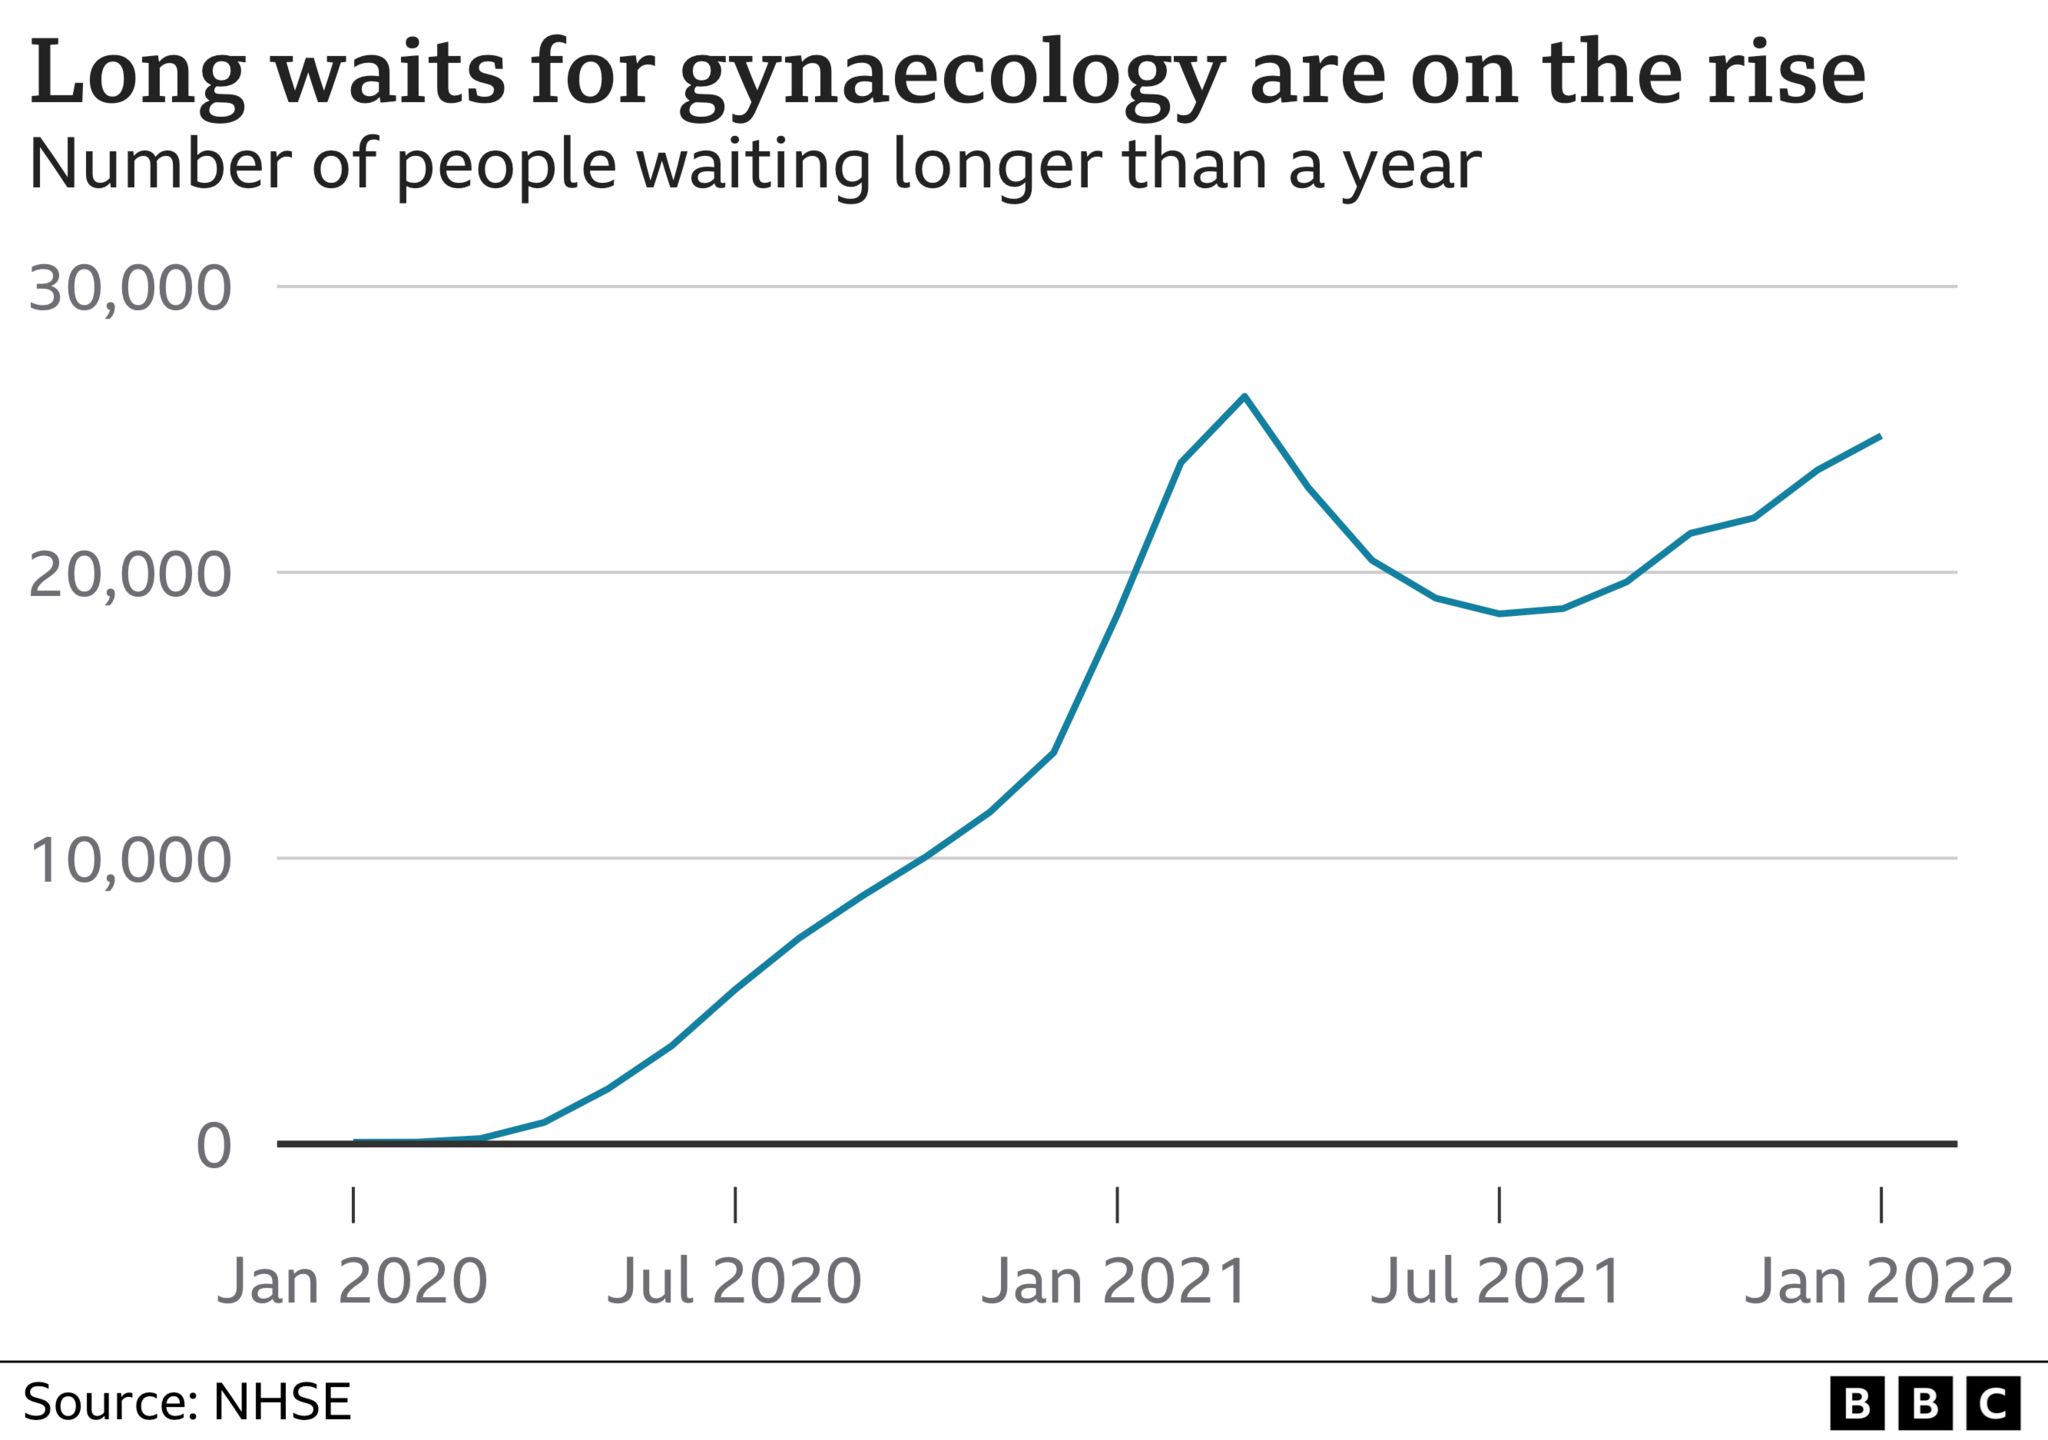 Gynaecology waits